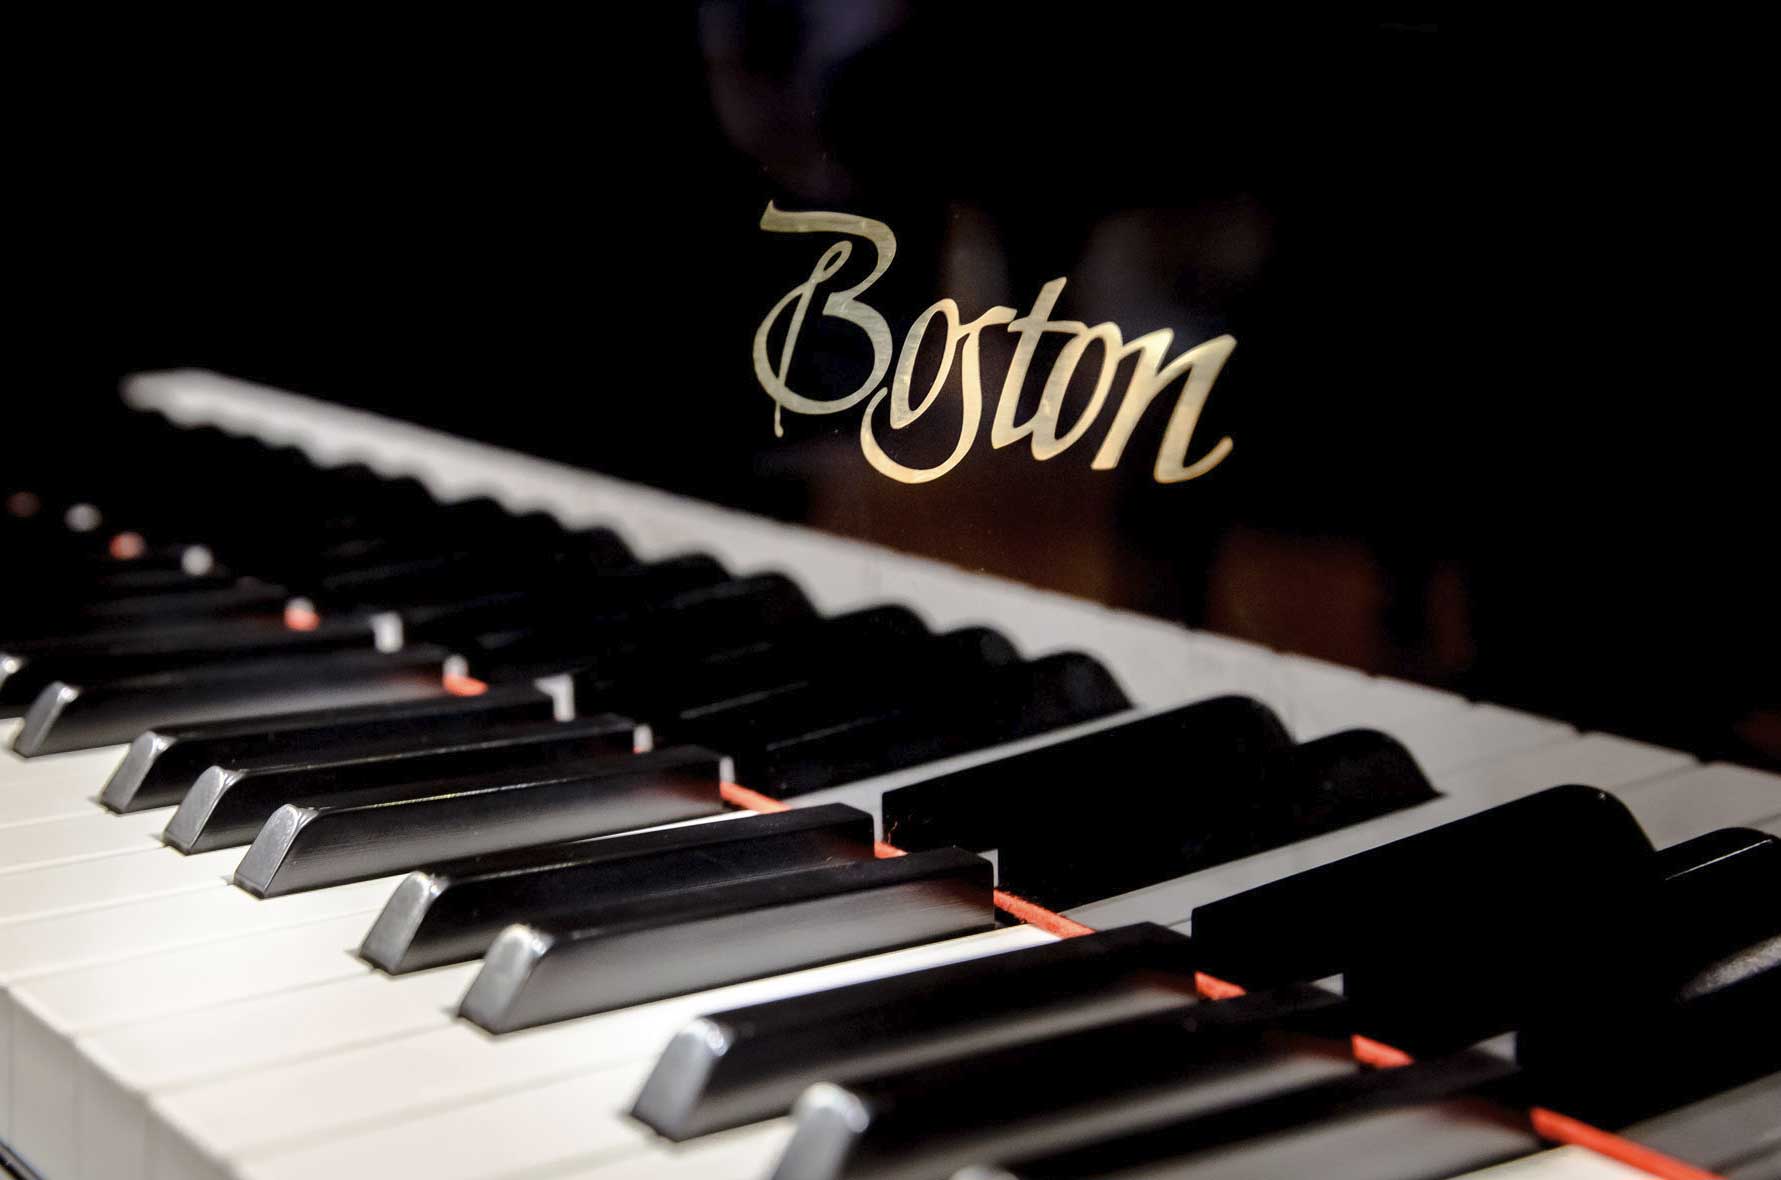 Boston Piano Cover